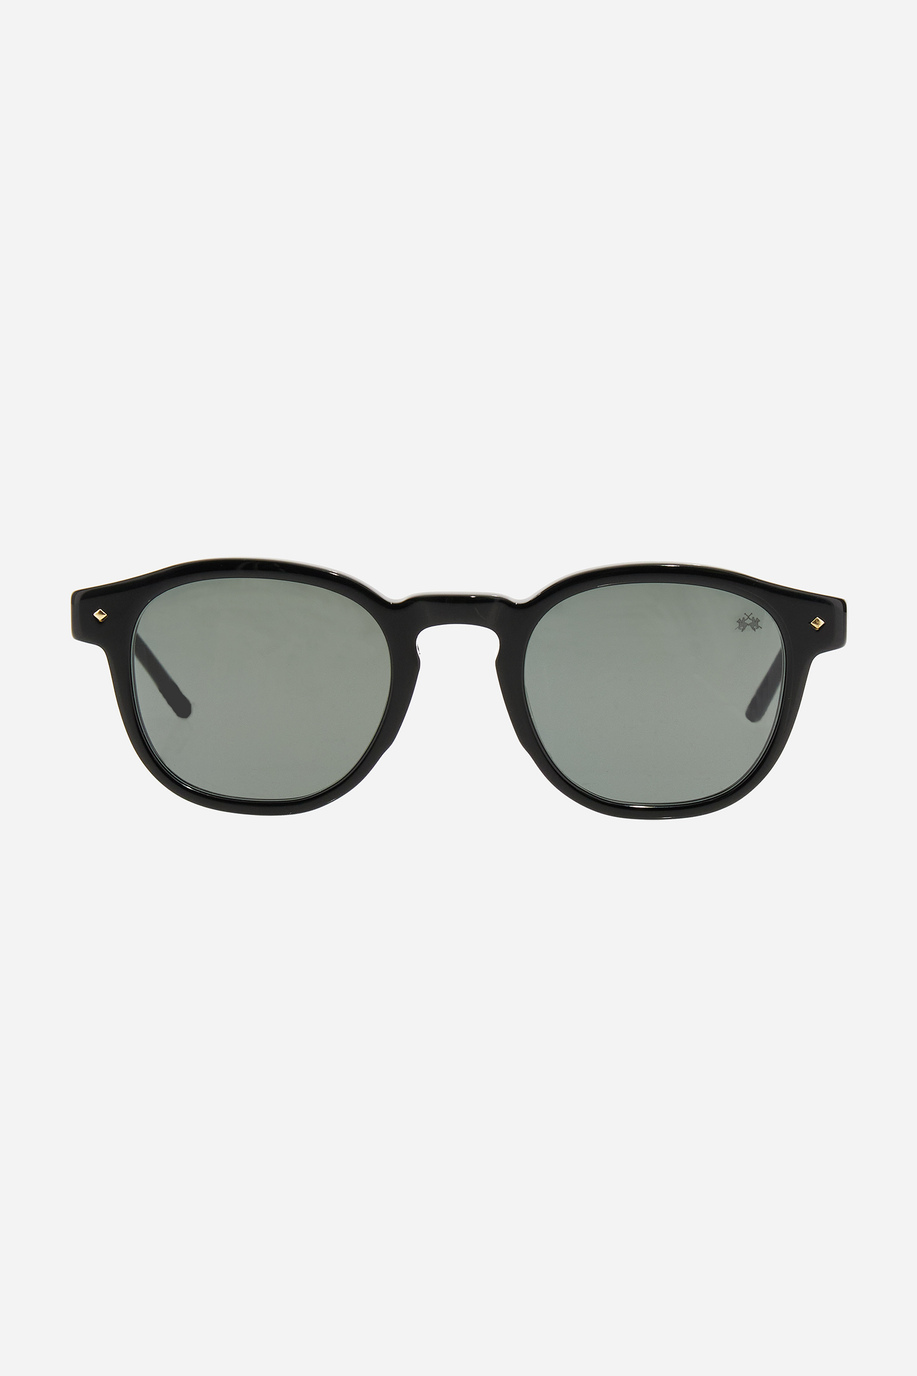 Drop model men's sunglasses - Accessories | La Martina - Official Online Shop